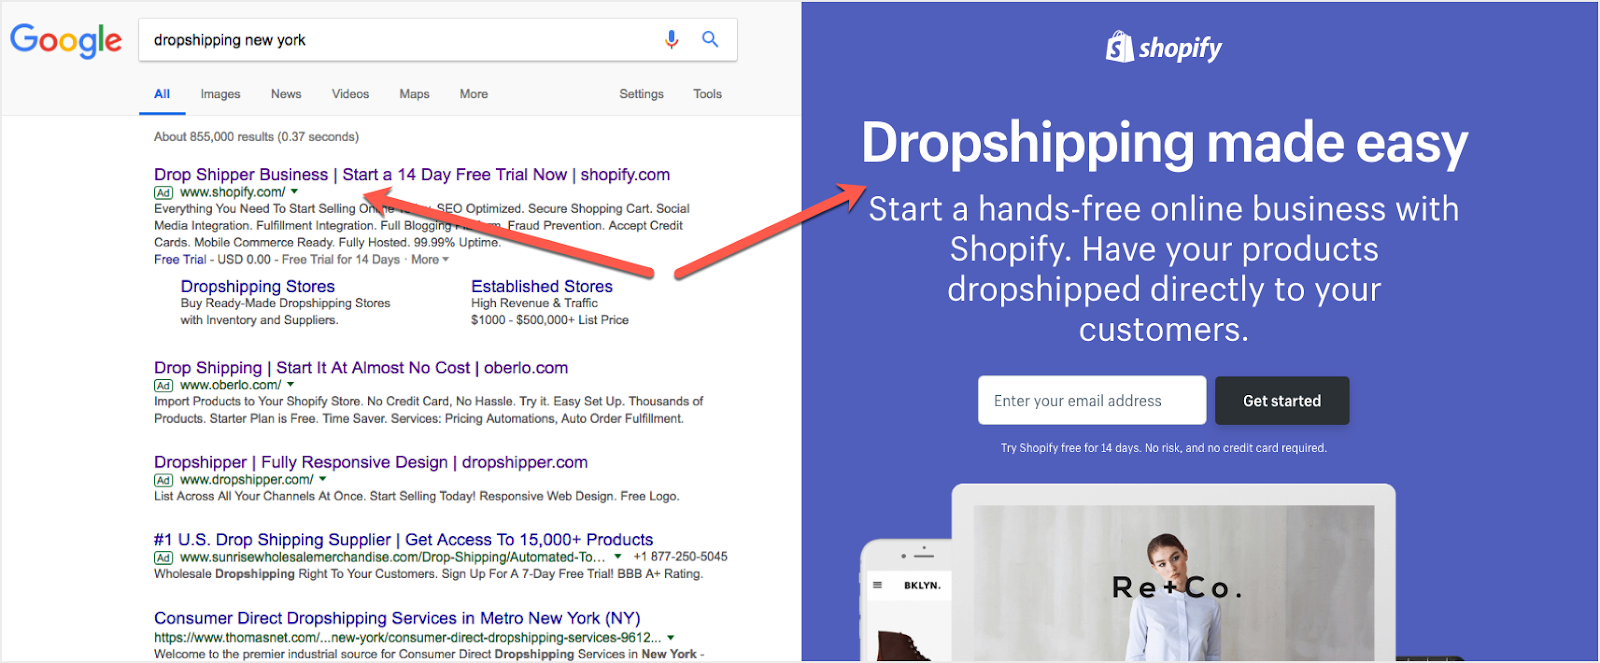 dropshipping google proposal